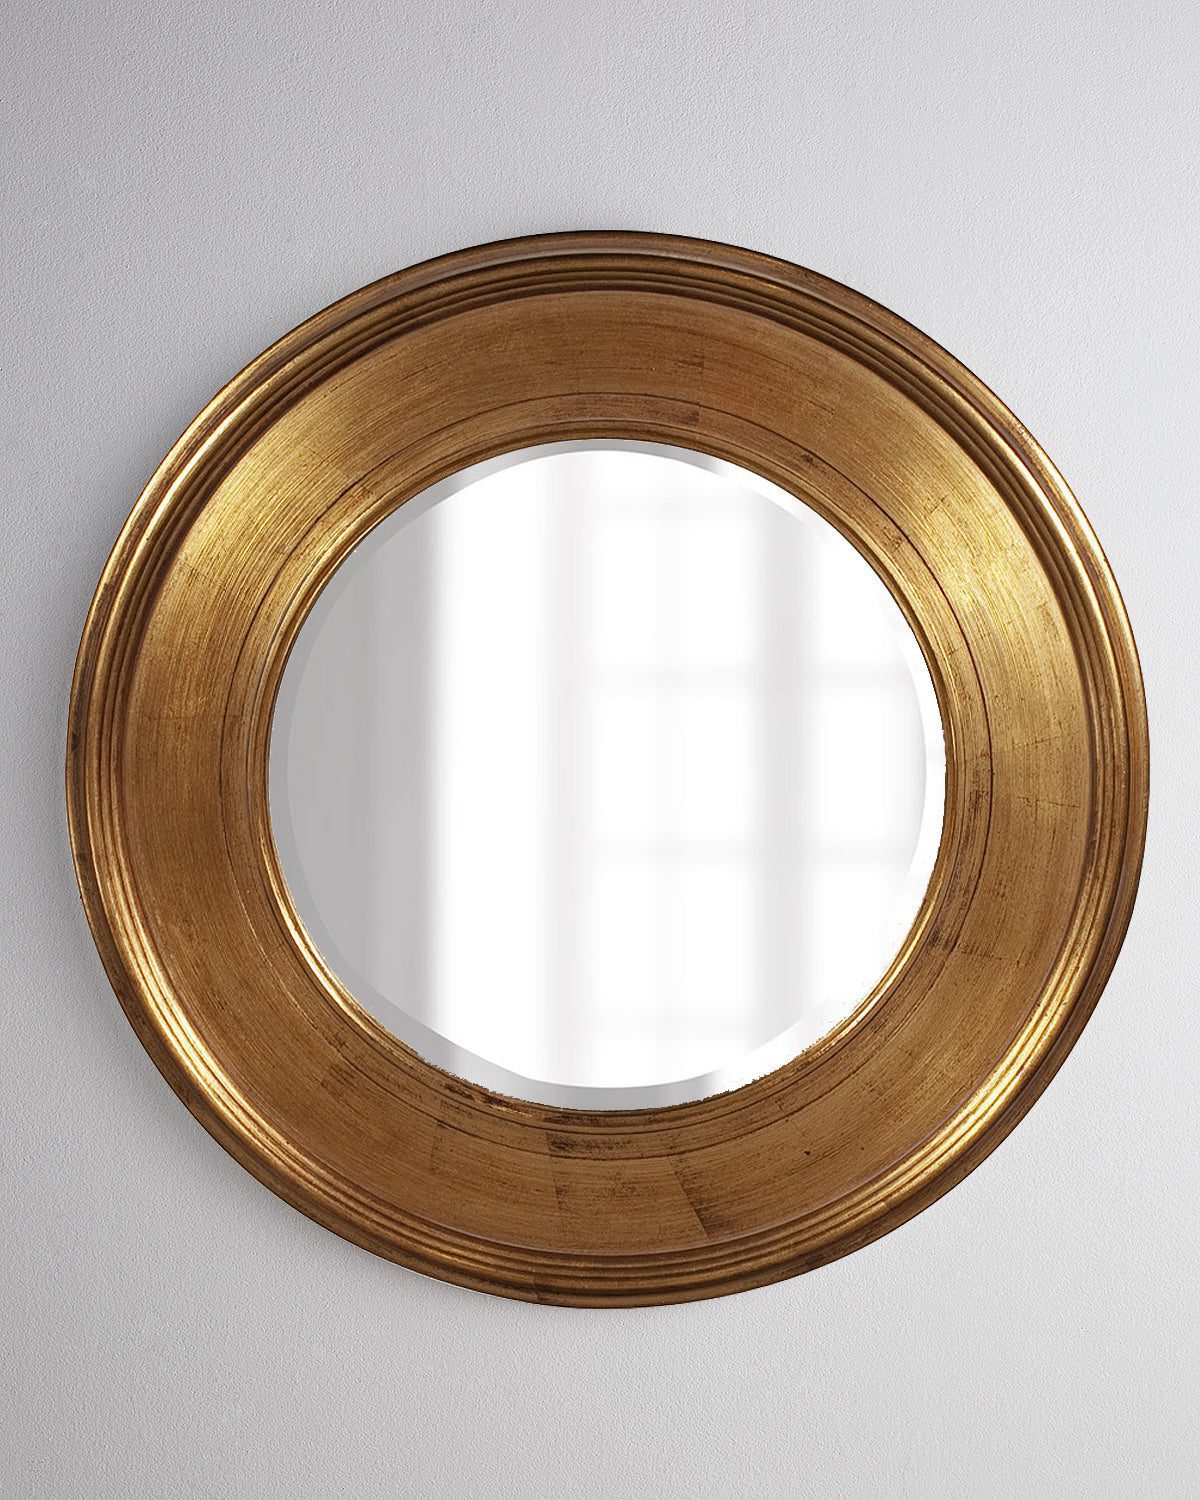 Круглое интерьерное зеркало "Рассел" в простой, лаконичной и широкой раме с золотой отделкой.